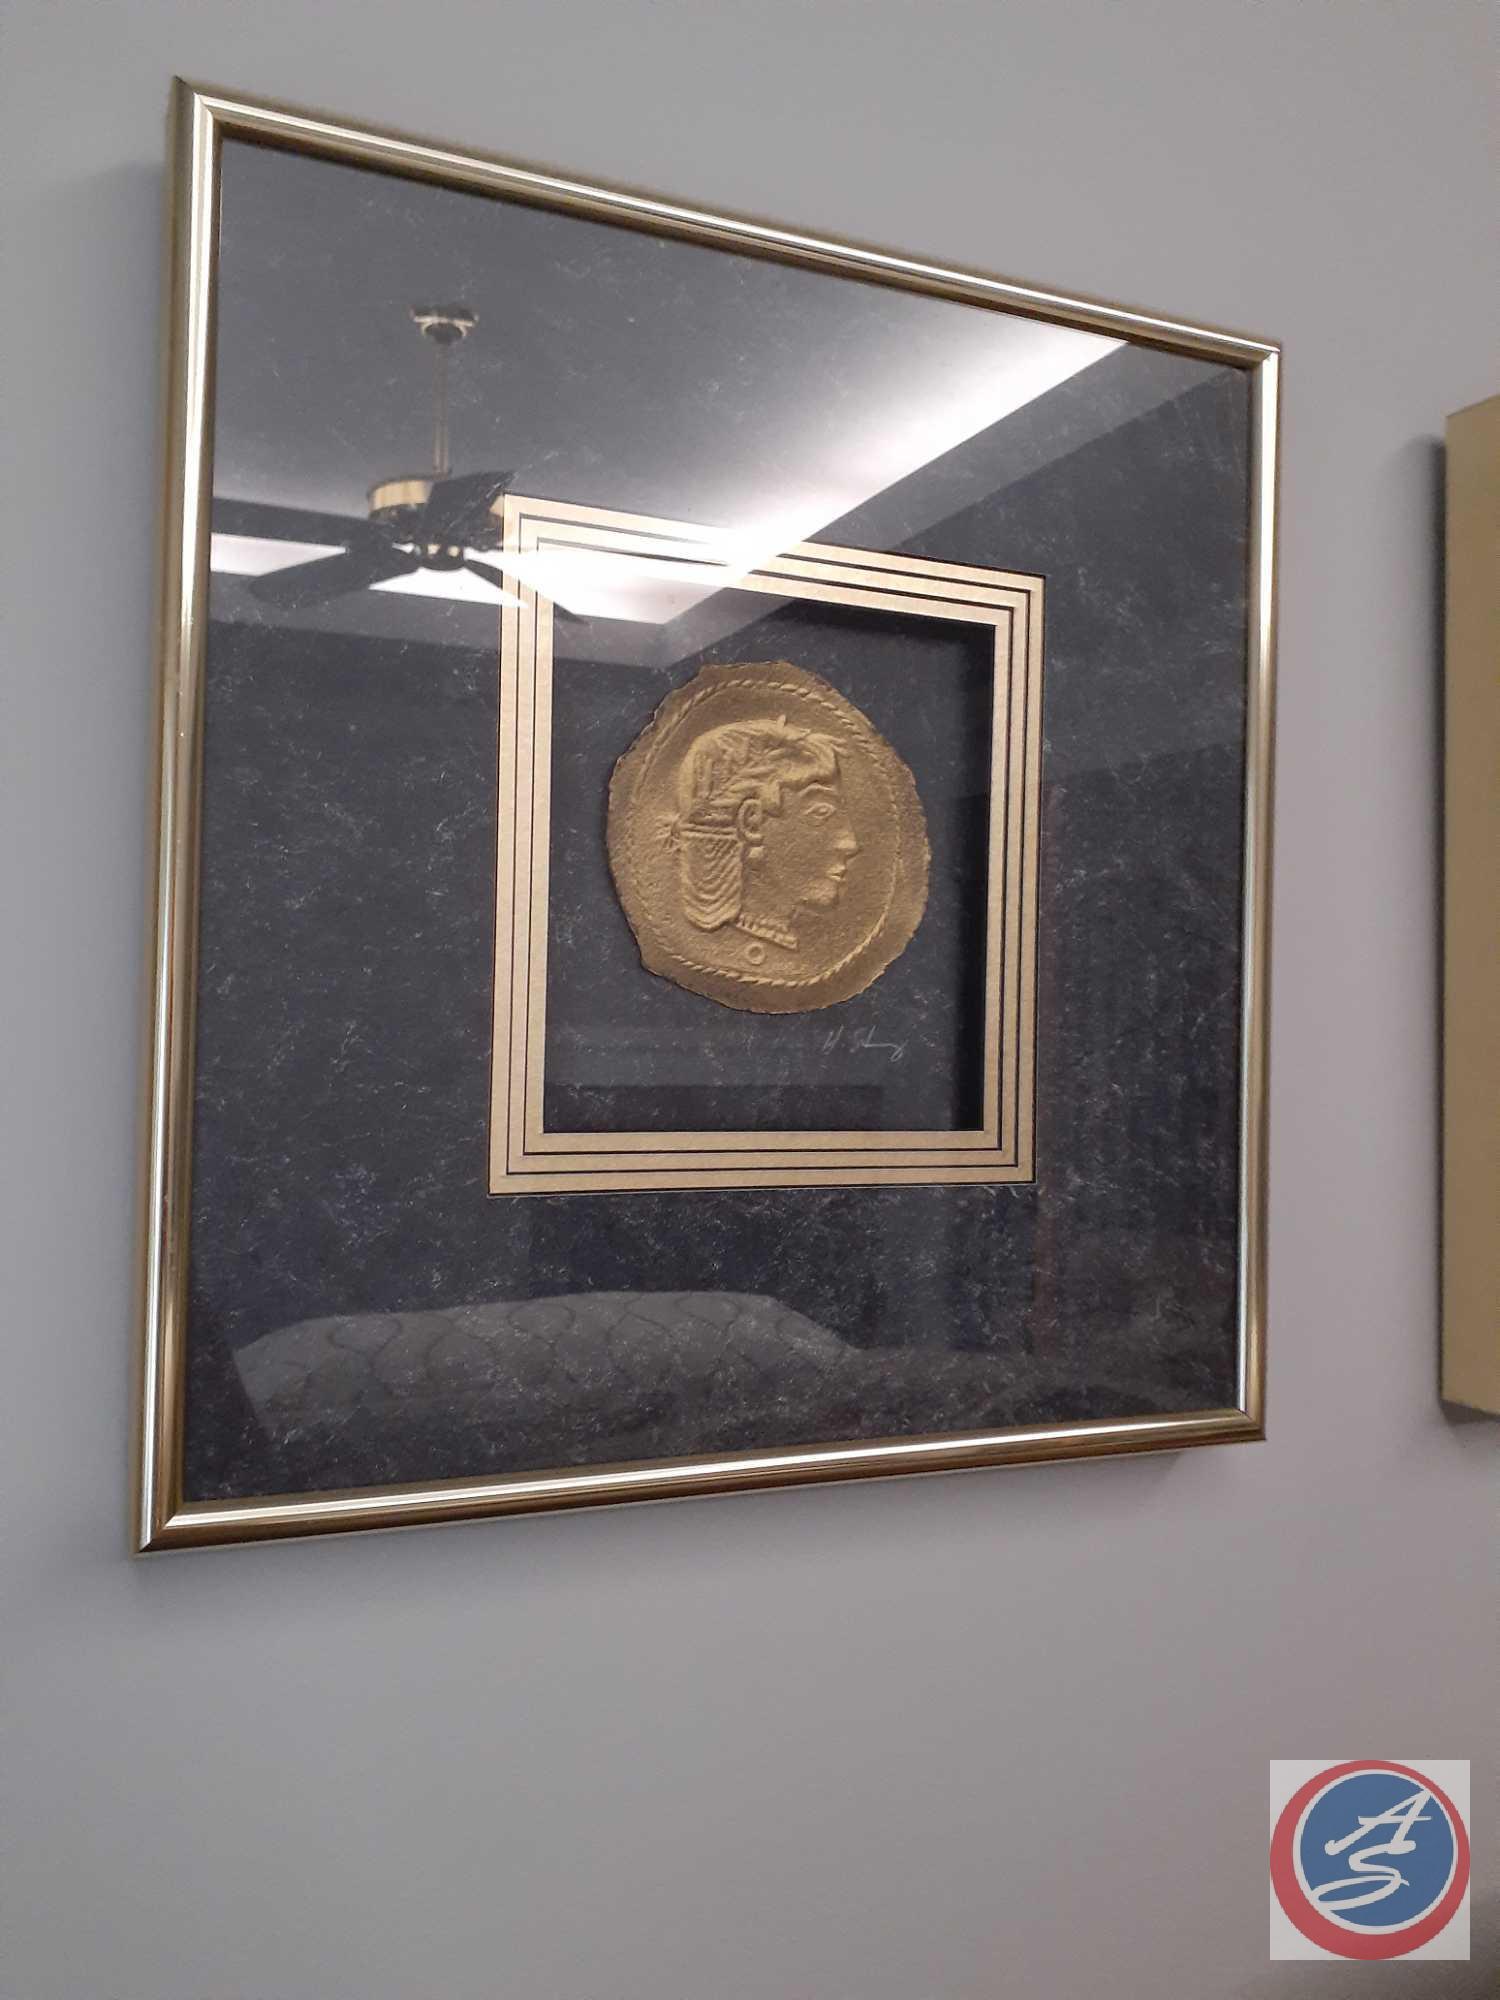 'Medallion'' Framed Artwork Signed by C. Dunlap 32'' x 40'', (3) Framed Gold Art Coins Signed by H.